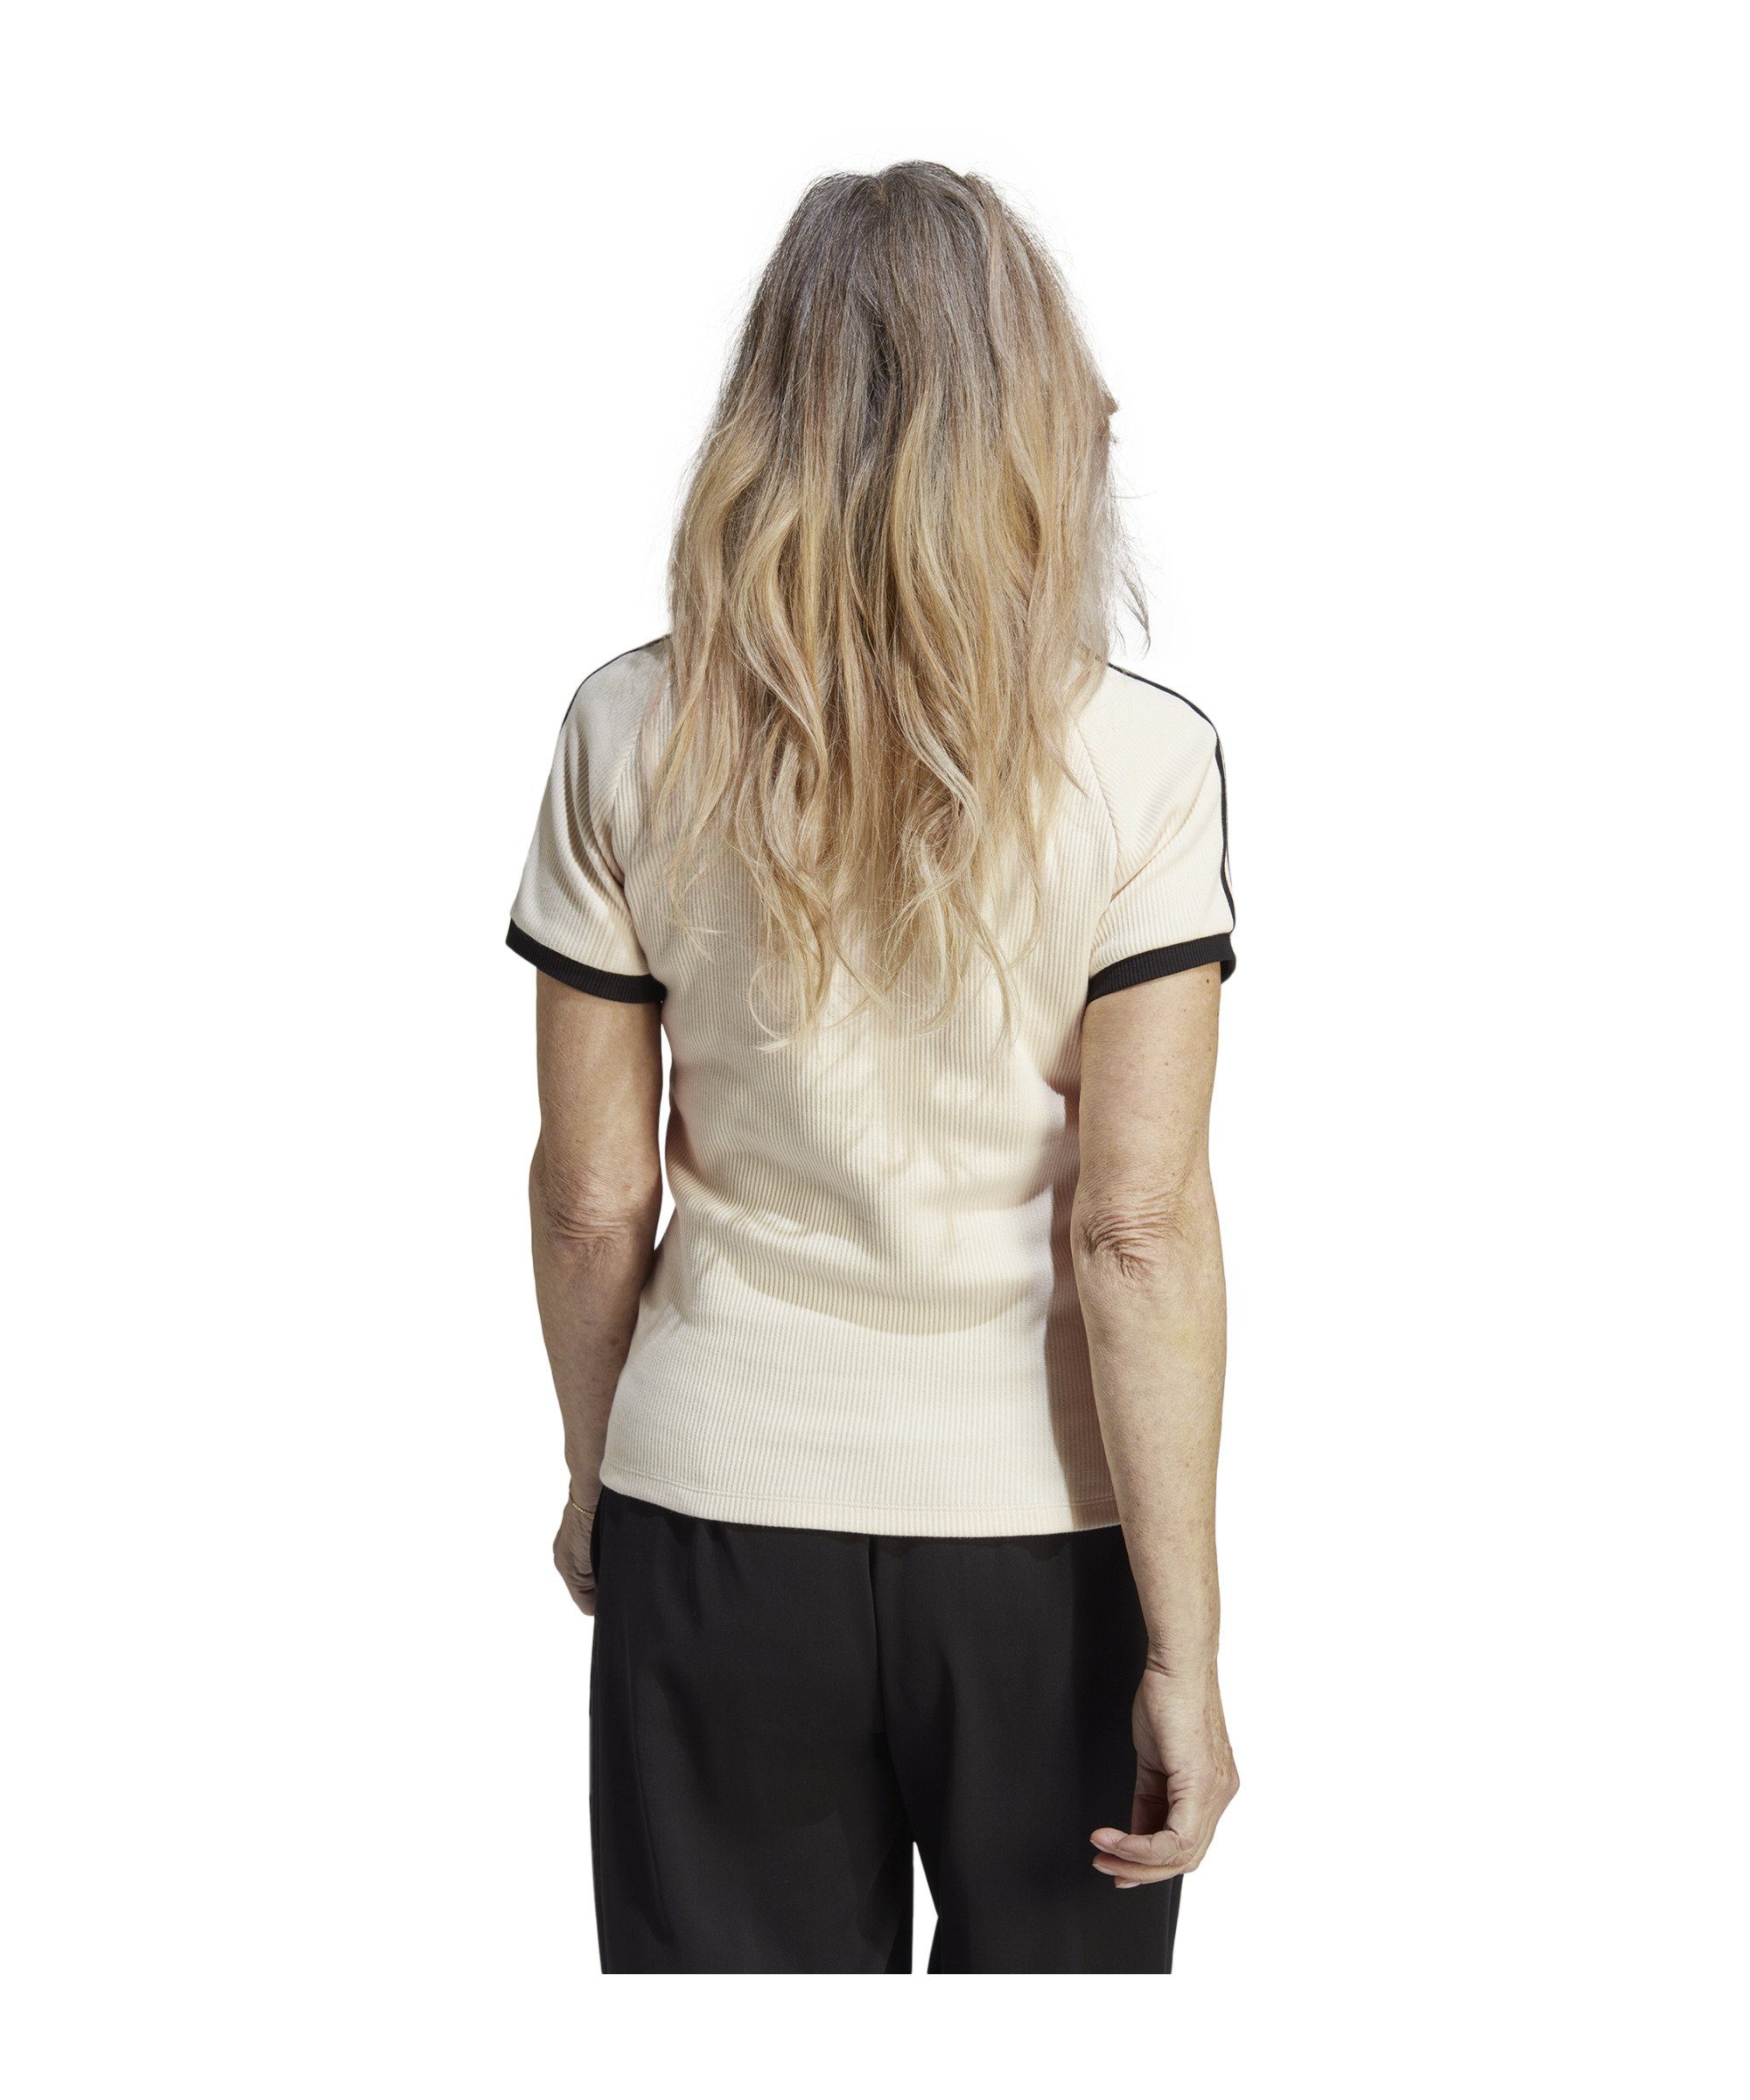 adidas Originals default T-Shirt Damen Slim T-Shirt weiss 3S